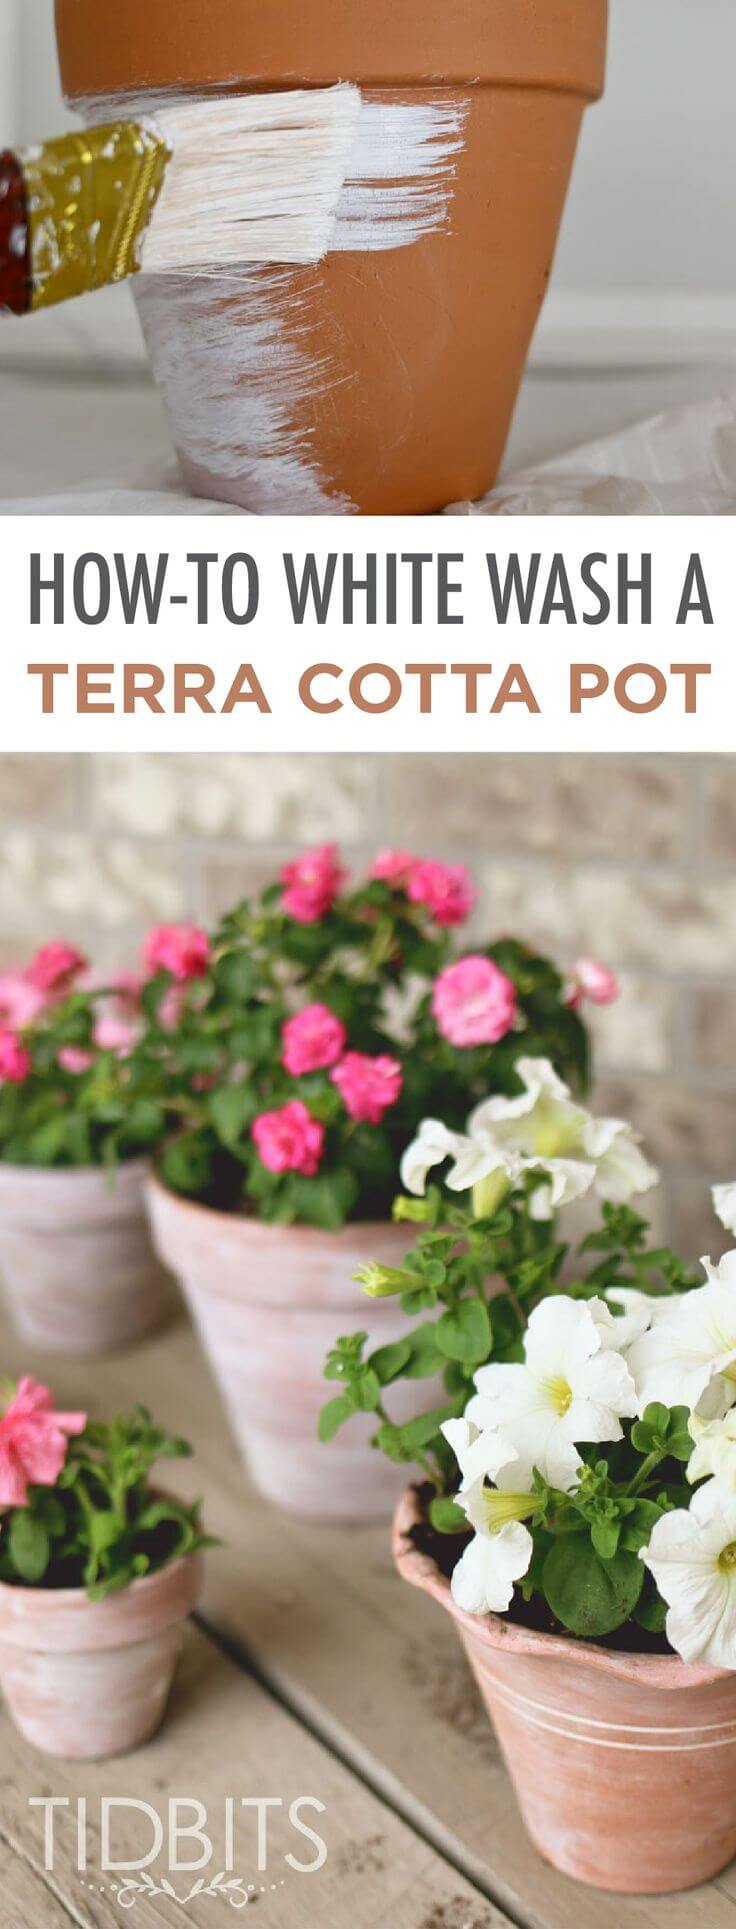 How to Distress New Terra Cotta Pots